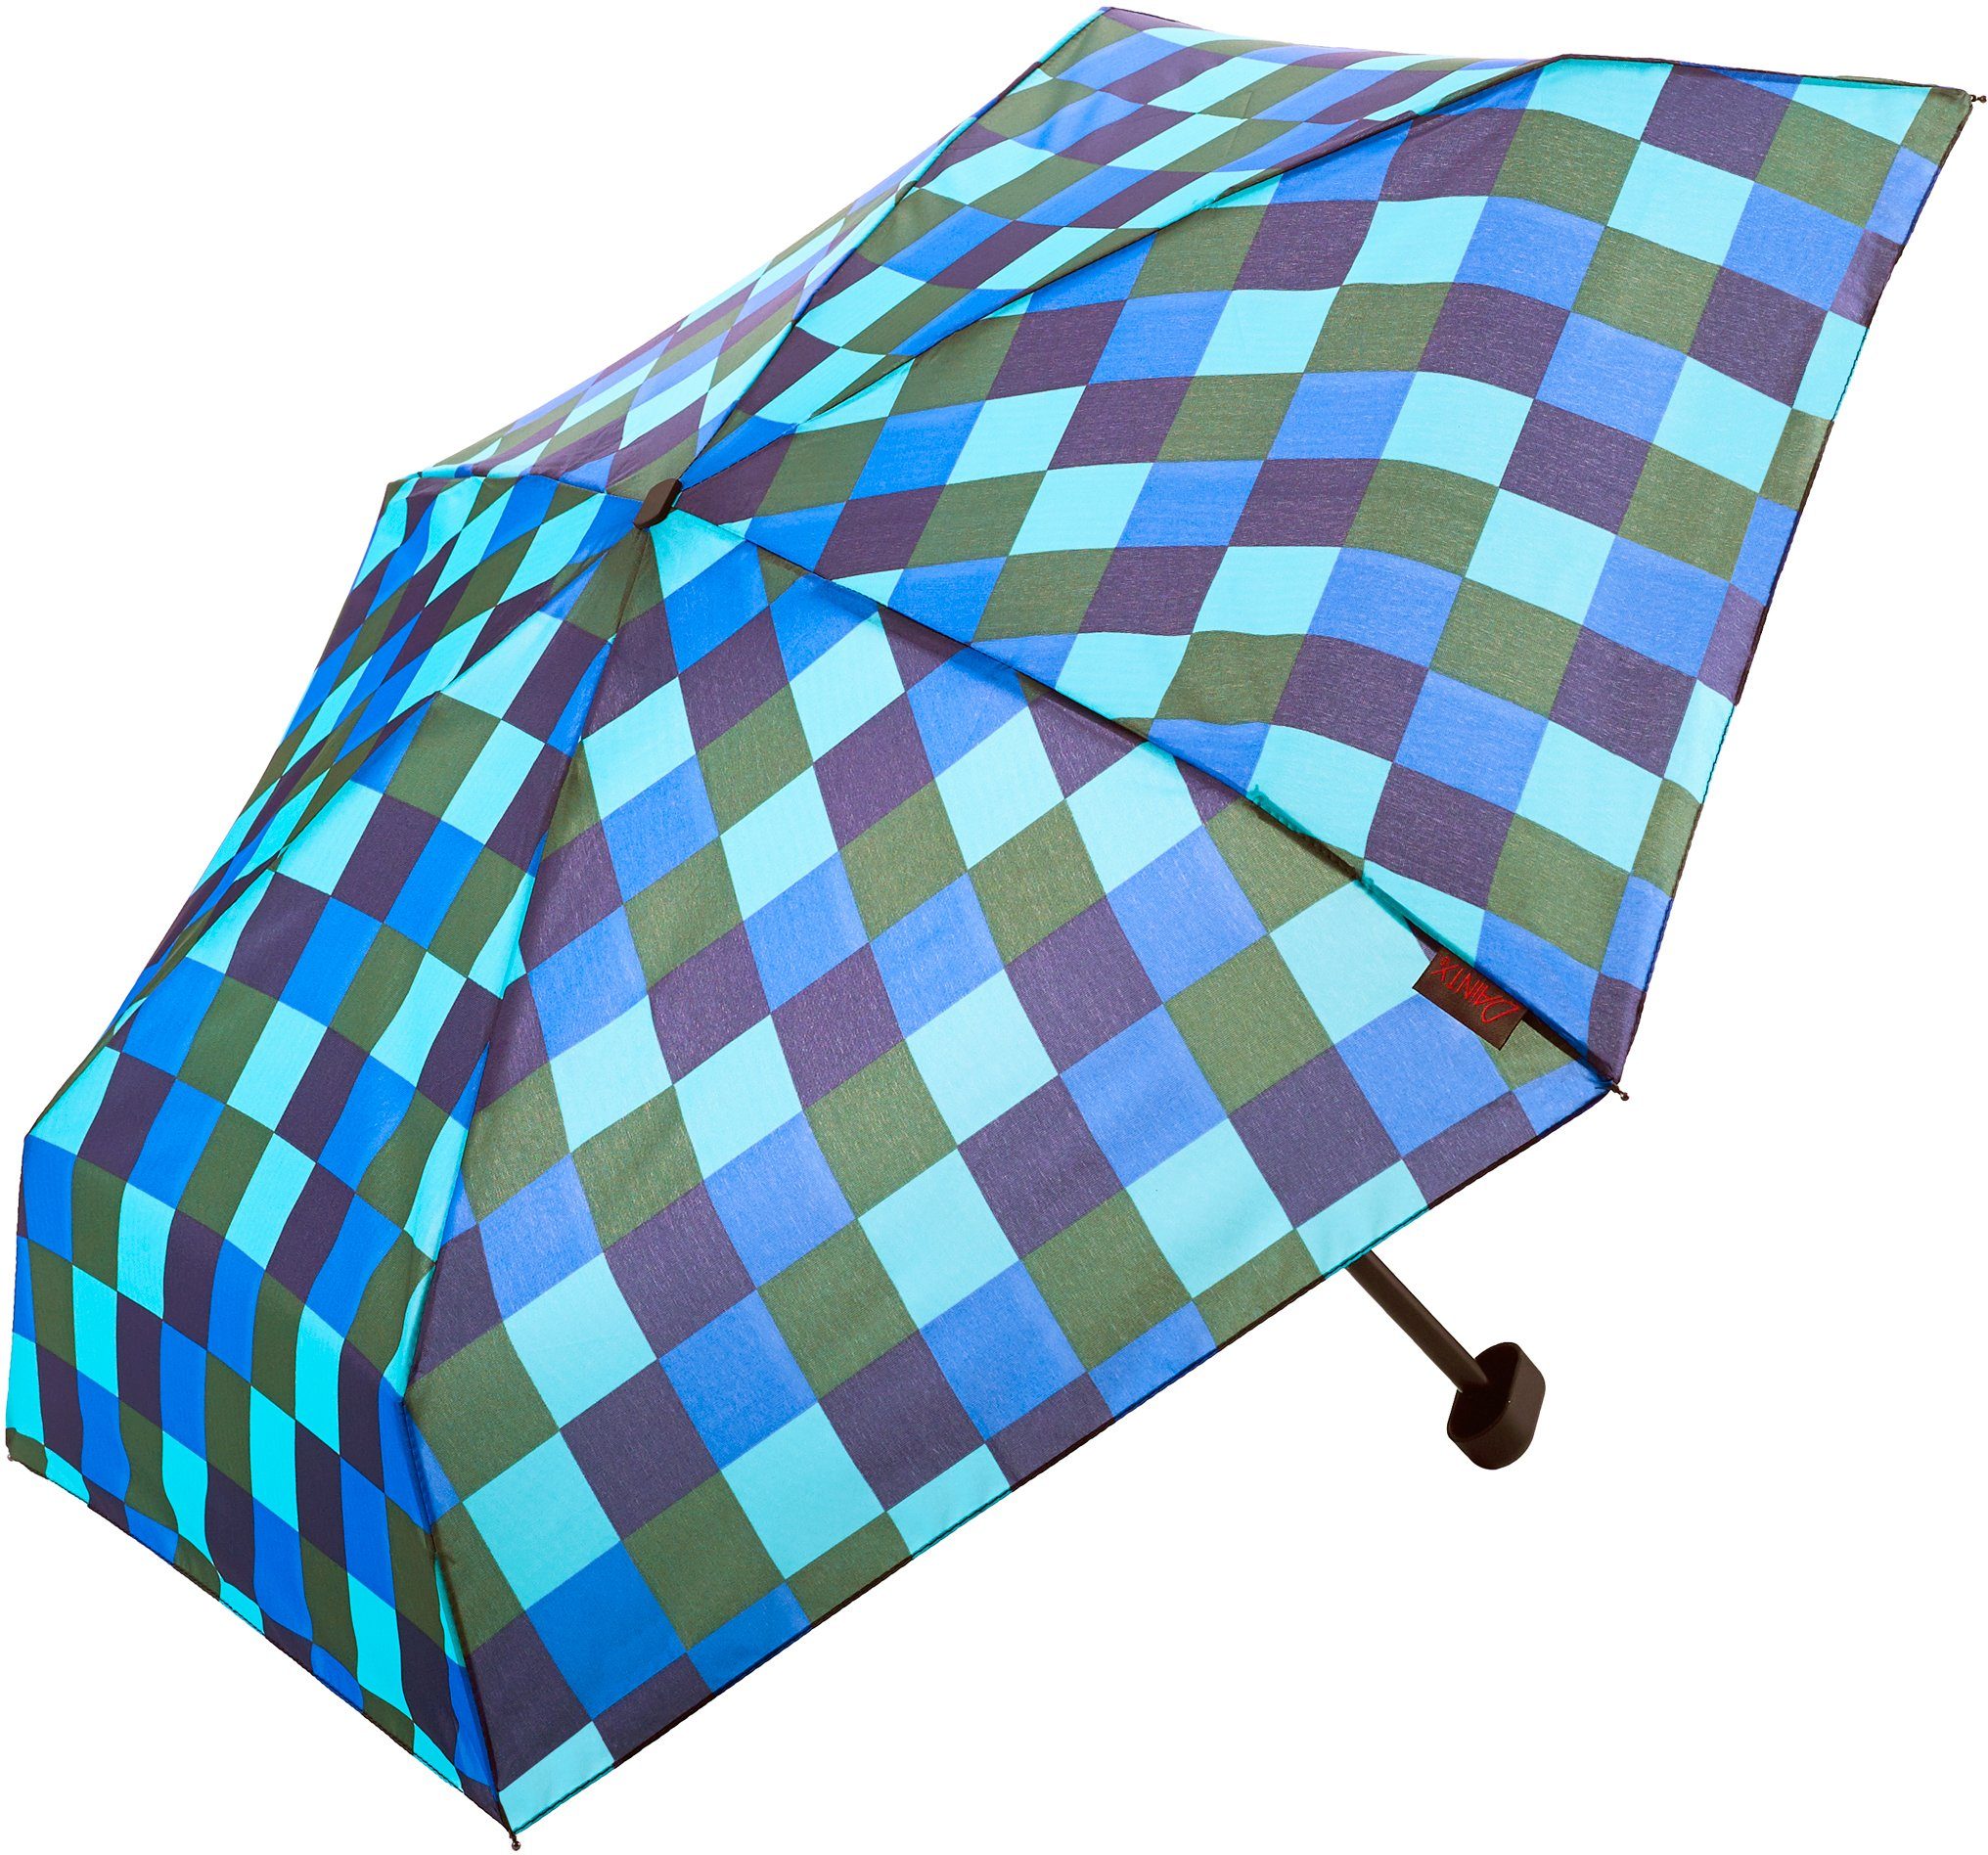 kurz, blau grün, Karo Dainty, »Dainty« Karo grün und blau Mini Regenschirm Taschenregenschirm EuroSCHIRM® flach extra EuroSCHIRM®